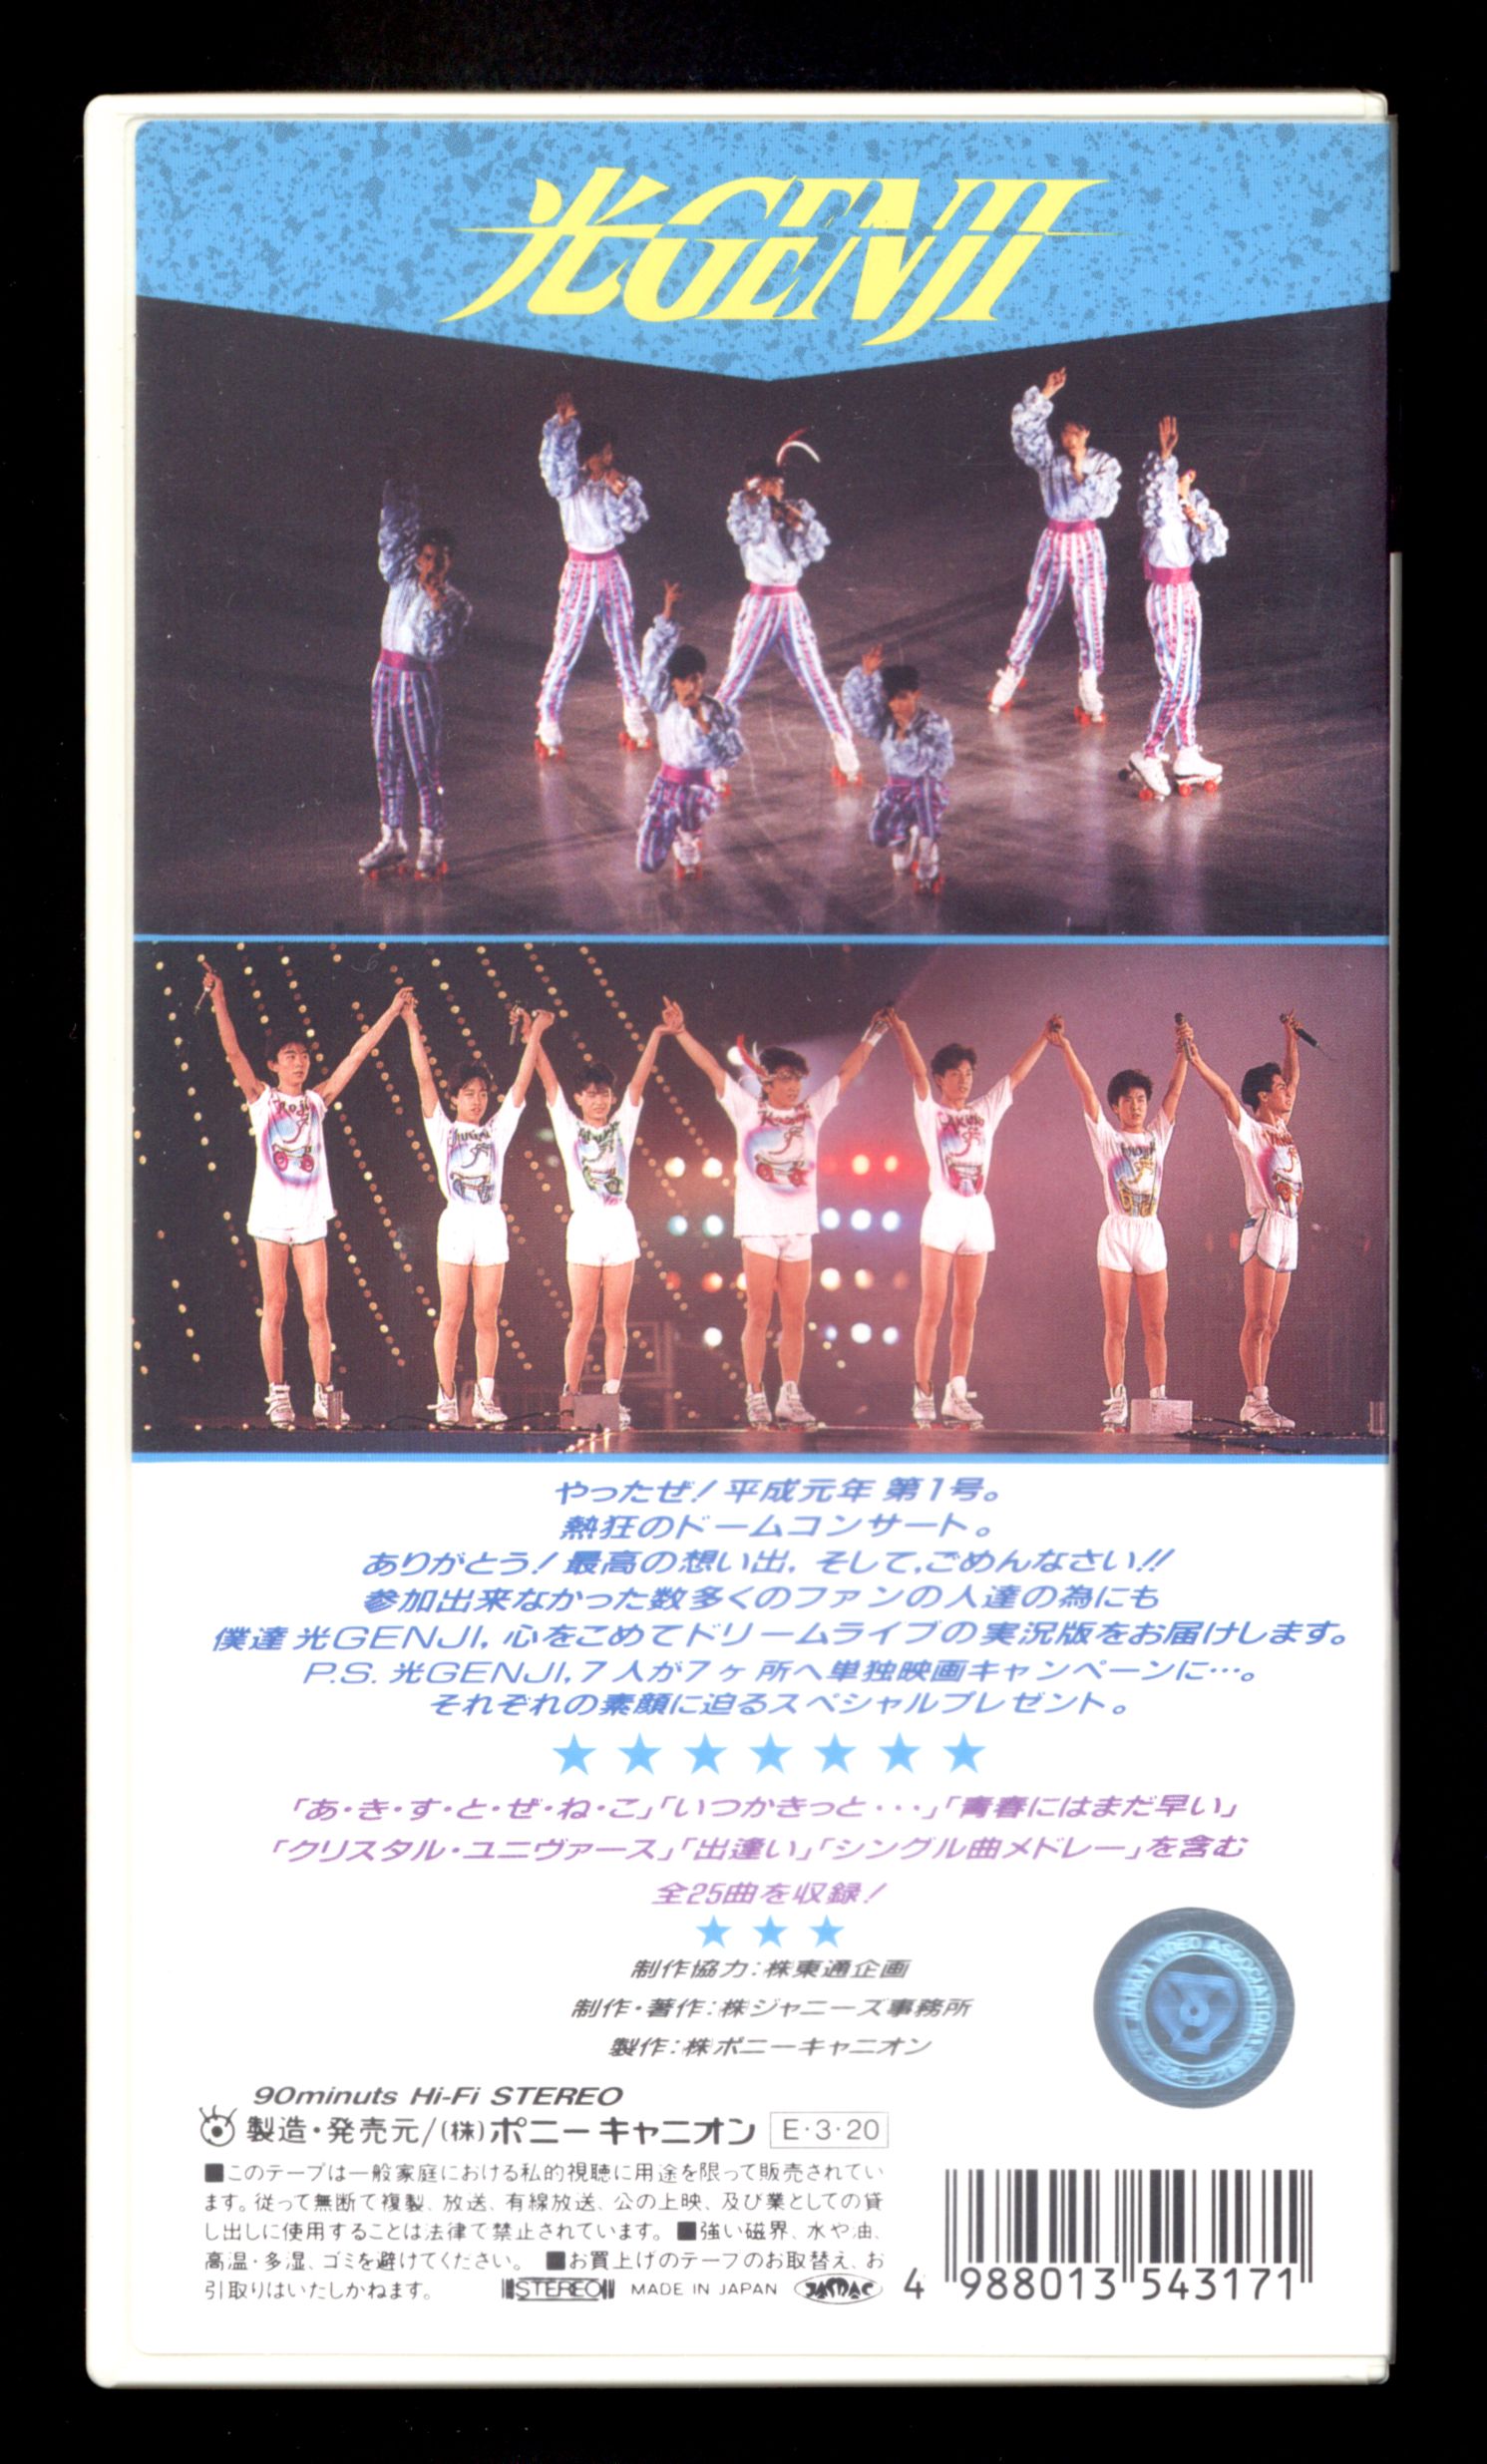 早い者勝ち‼️ ジャニーズ第3世代 光GENJI コンサートであおう! DVD - DVD/ブルーレイ